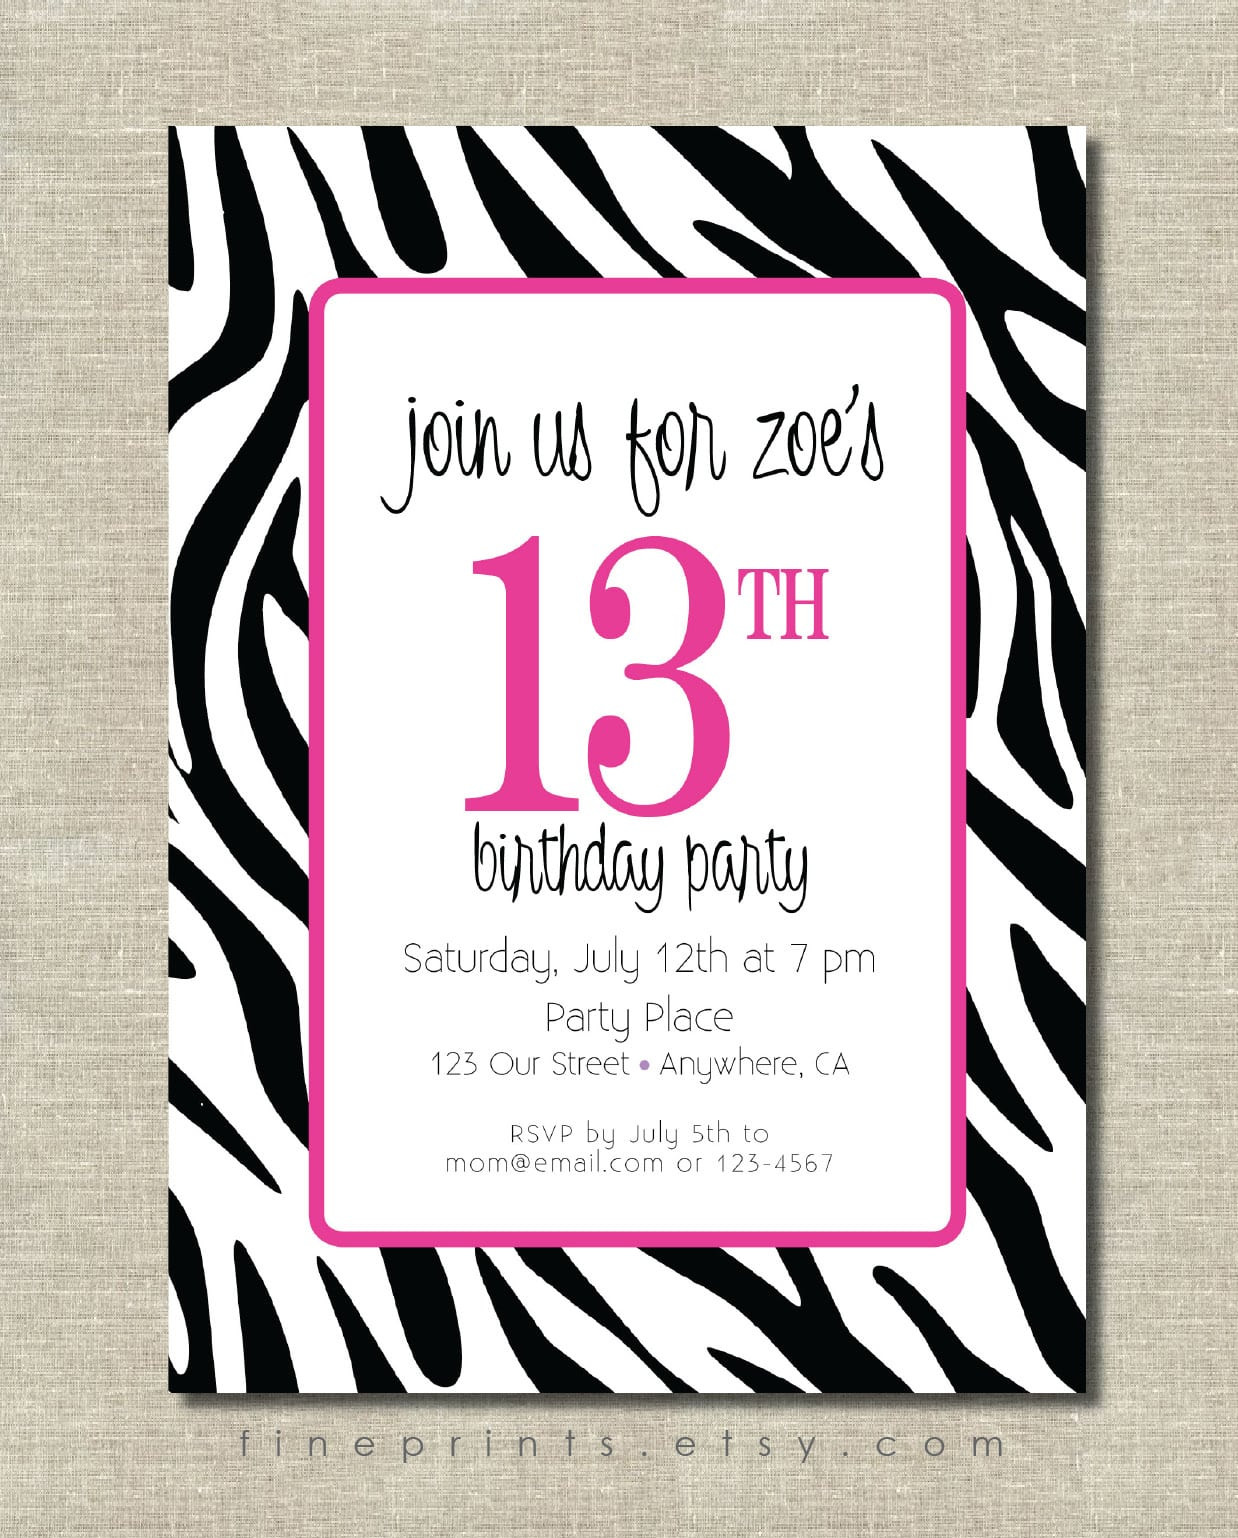 Zebra Print Birthday Invitations
 Free Printable Zebra Print Birthday Invitation